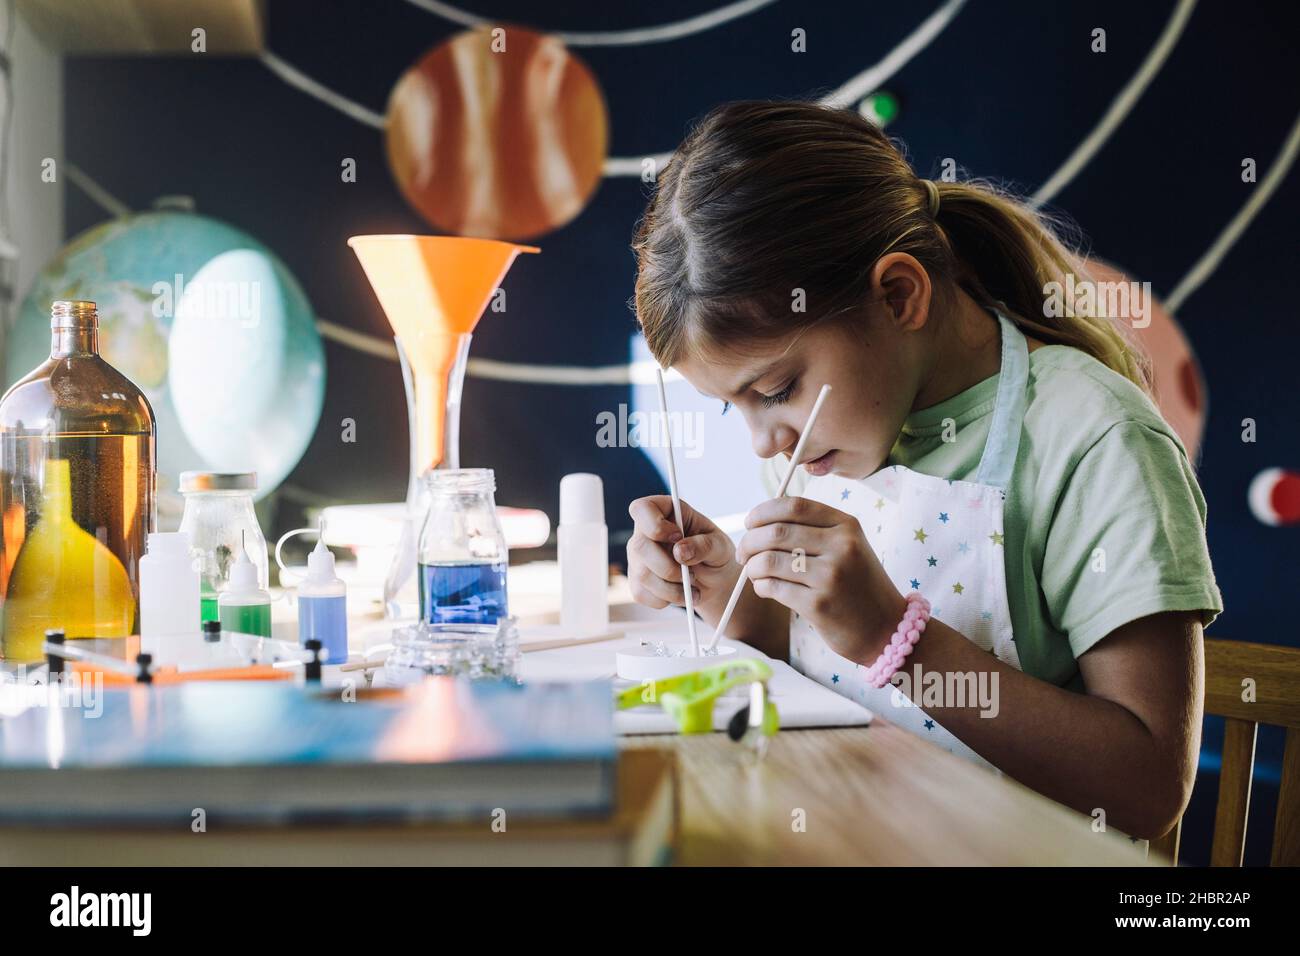 Ambiziosa studentessa studentessa che impara l'esperimento scientifico a casa Foto Stock